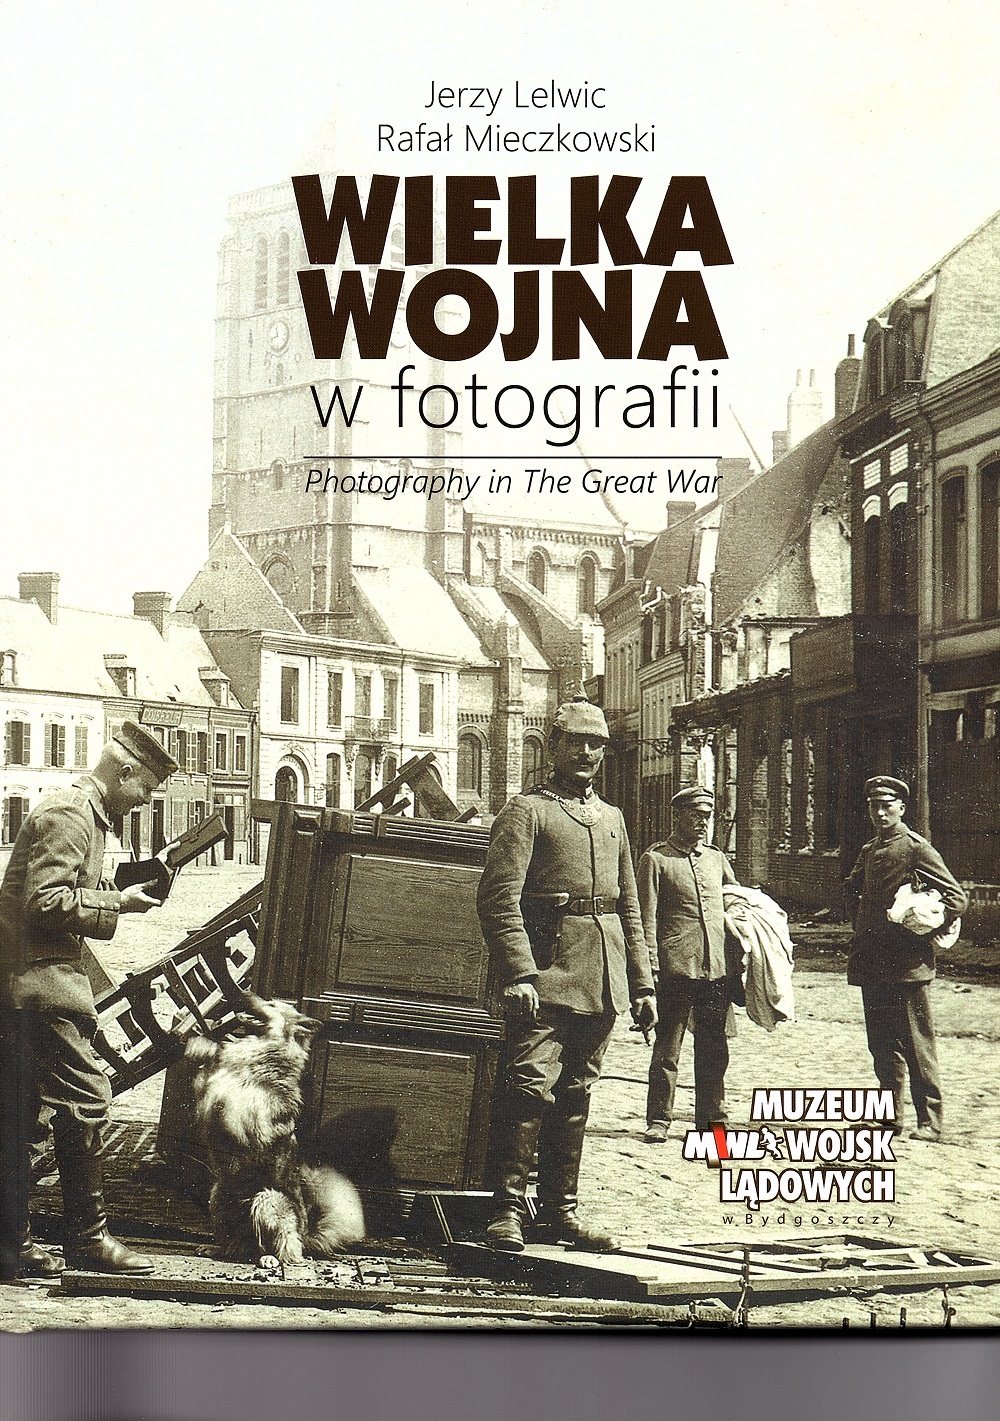 "Wielka Wojna w fotografii"Jerzy Lelwic, Rafał Mieczkowski